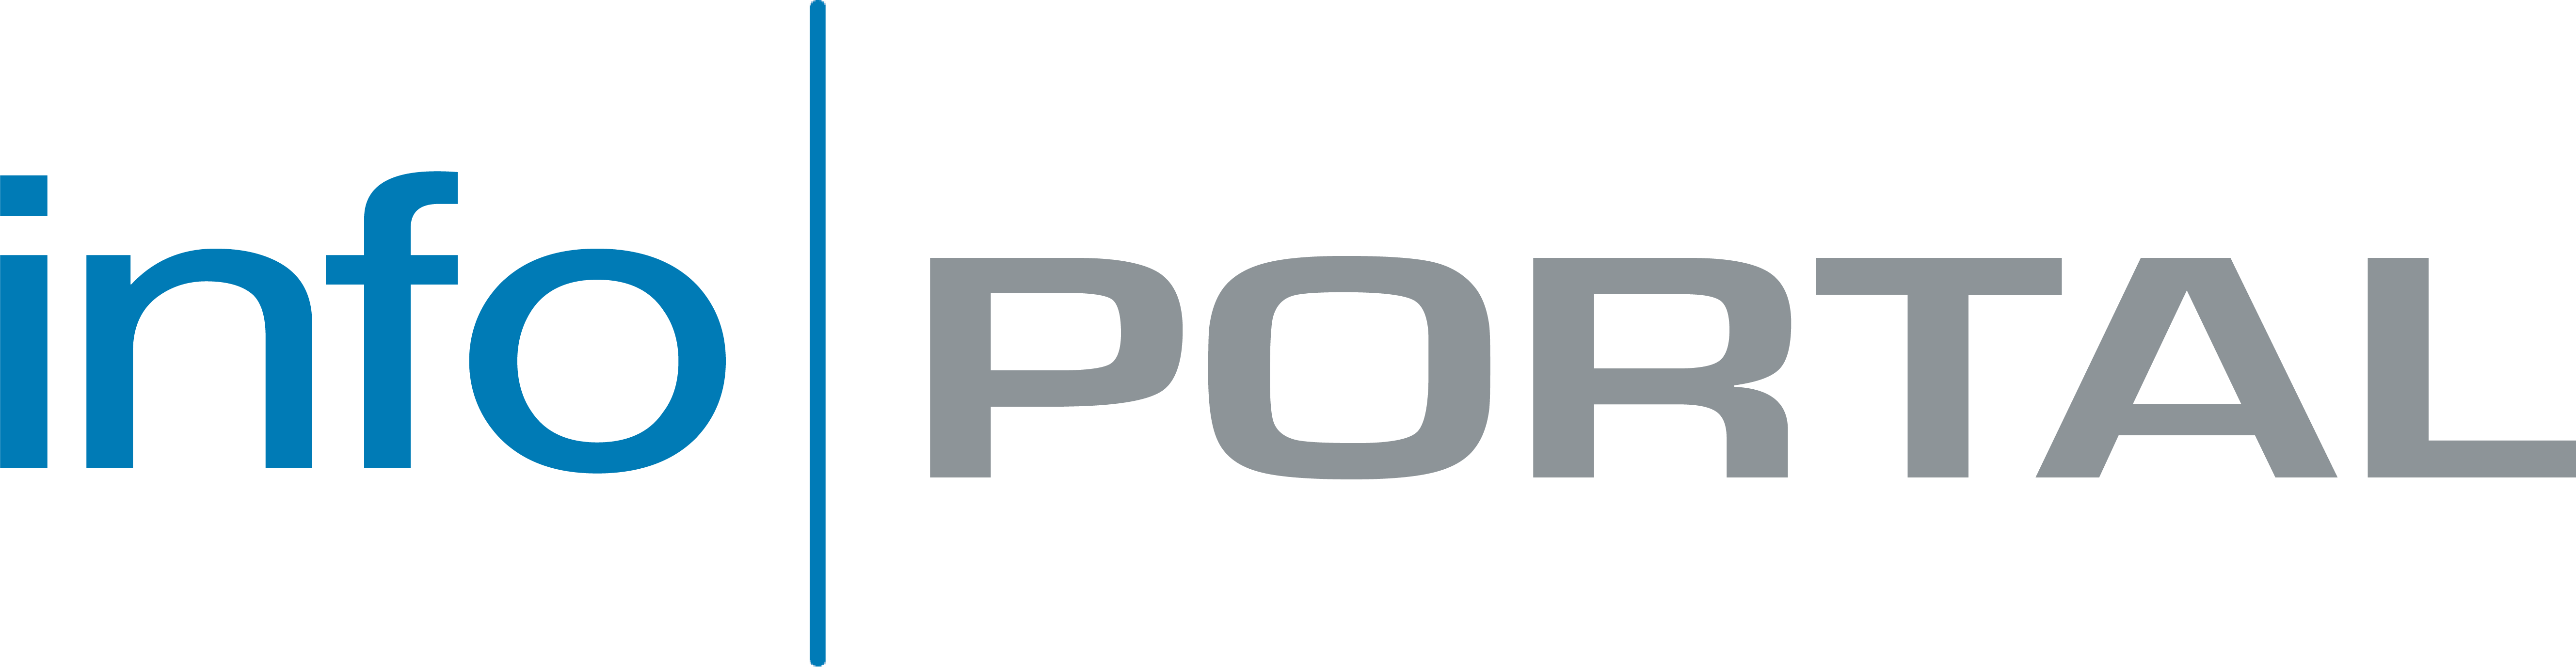 Infoportal MX logo